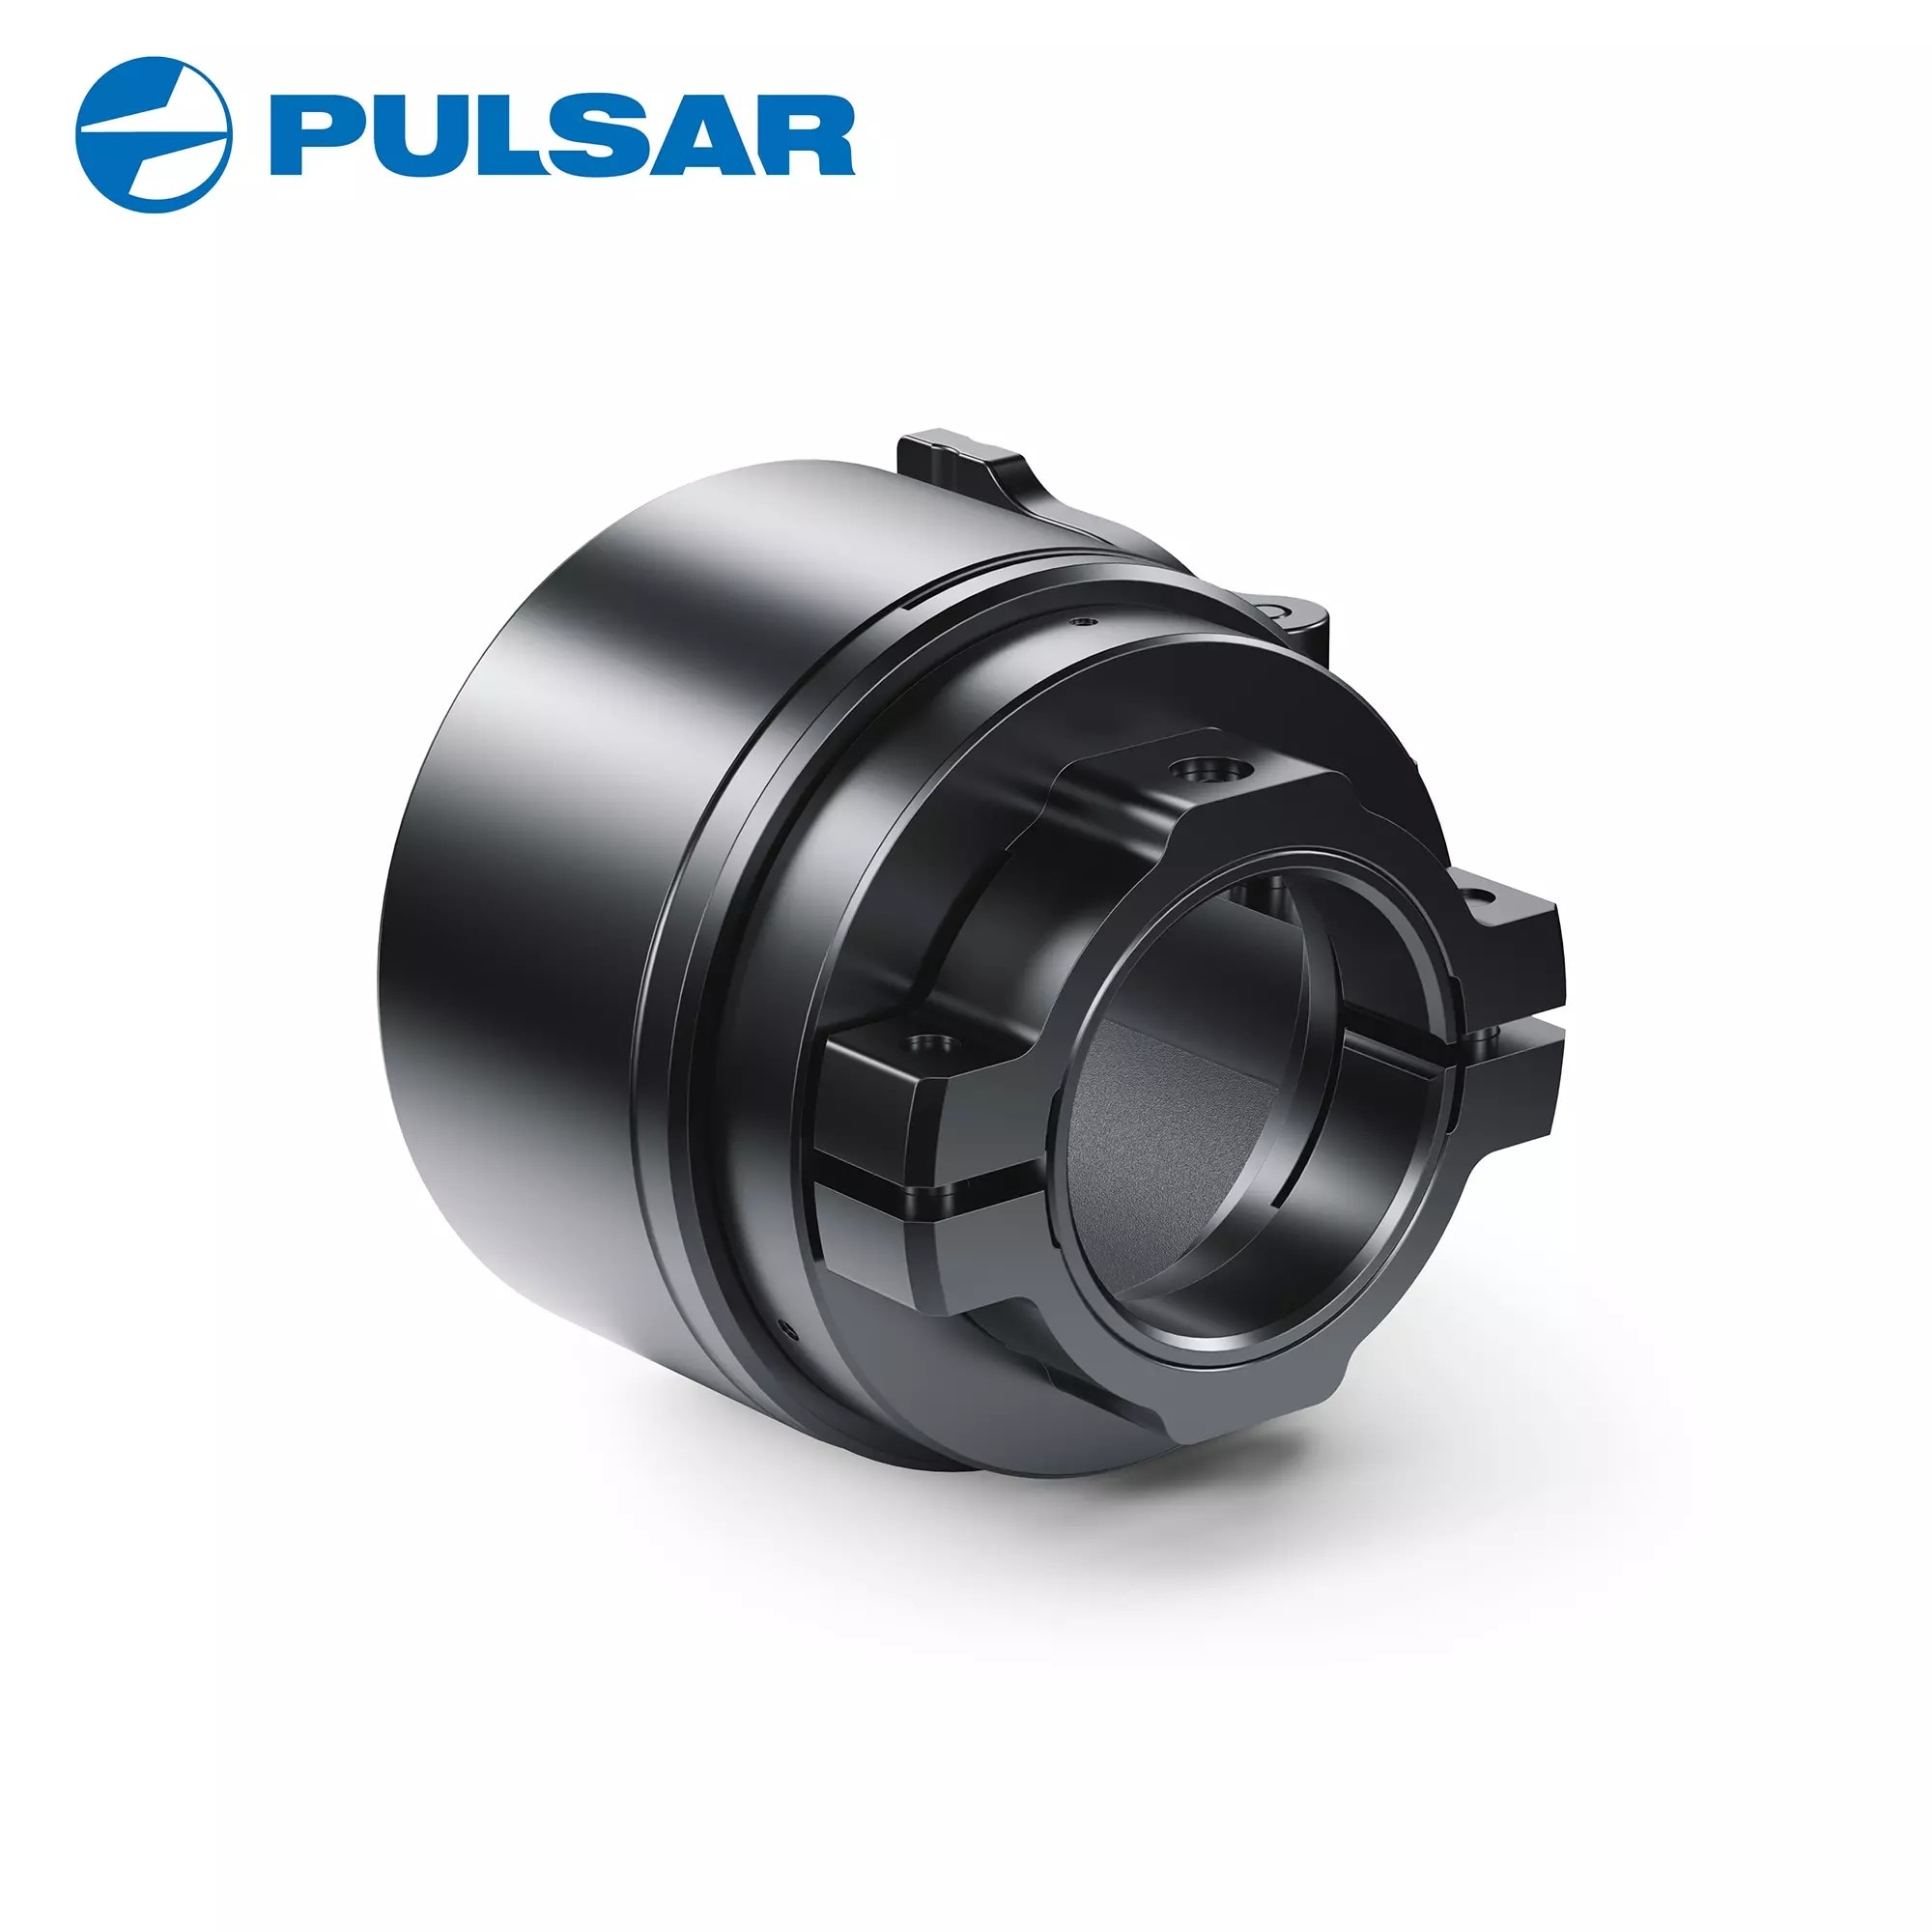 Pulsar PSP 50 MM Adapter Ring